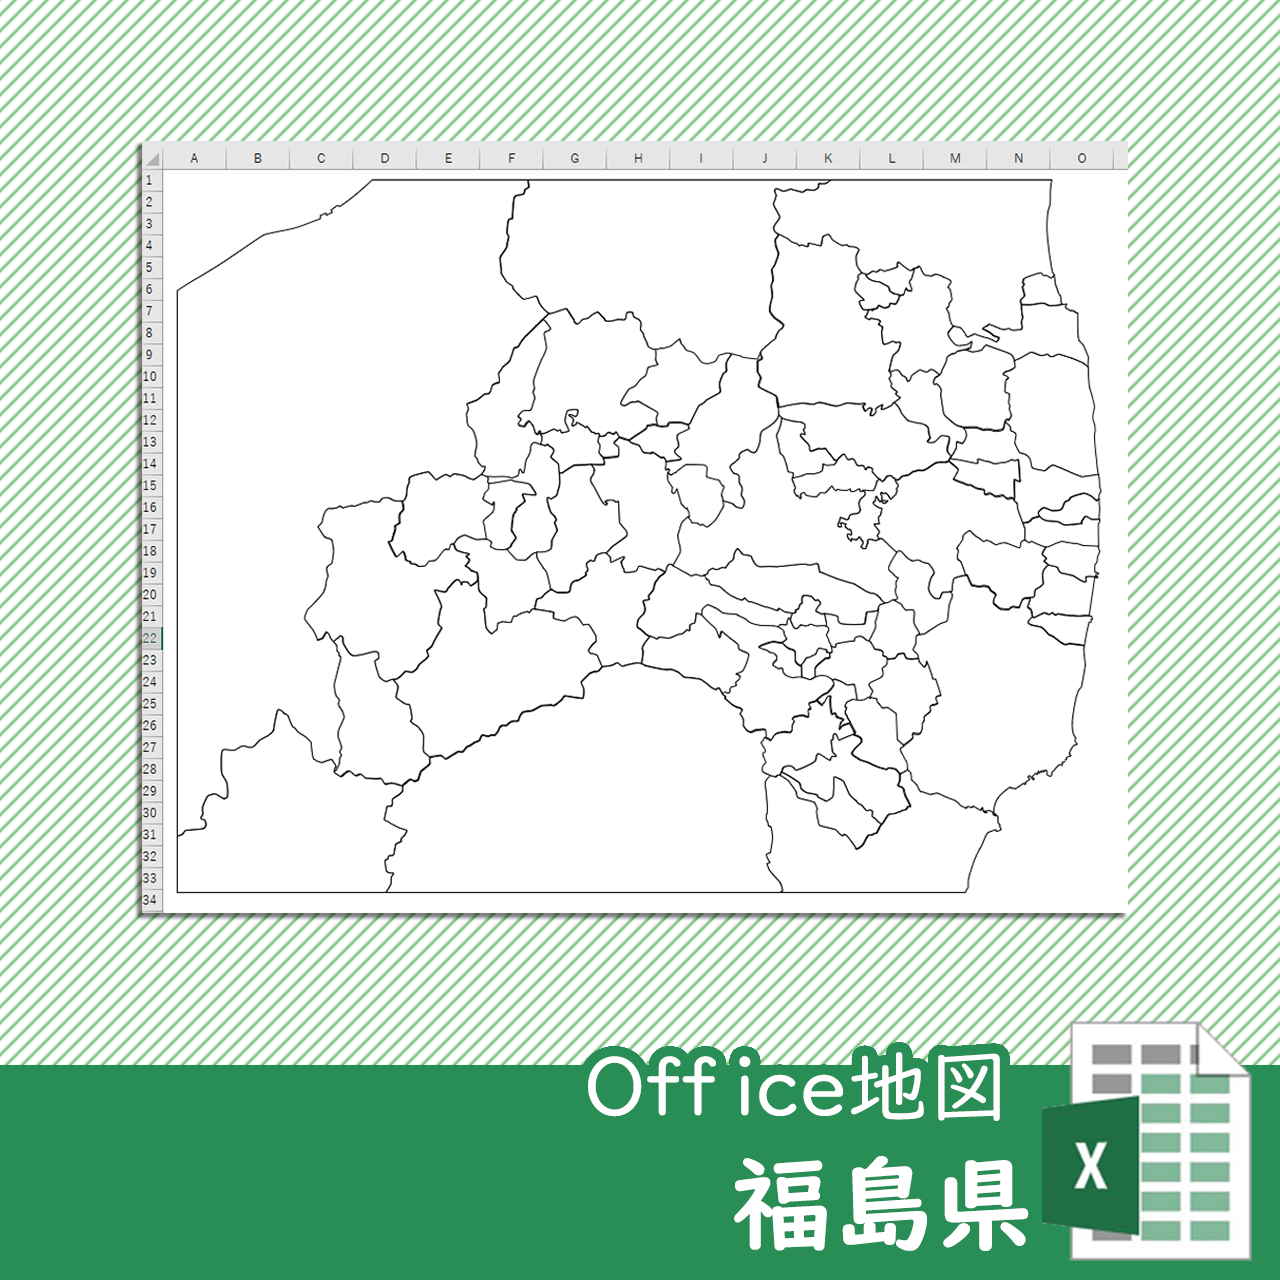 福島県のOffice地図のサムネイル